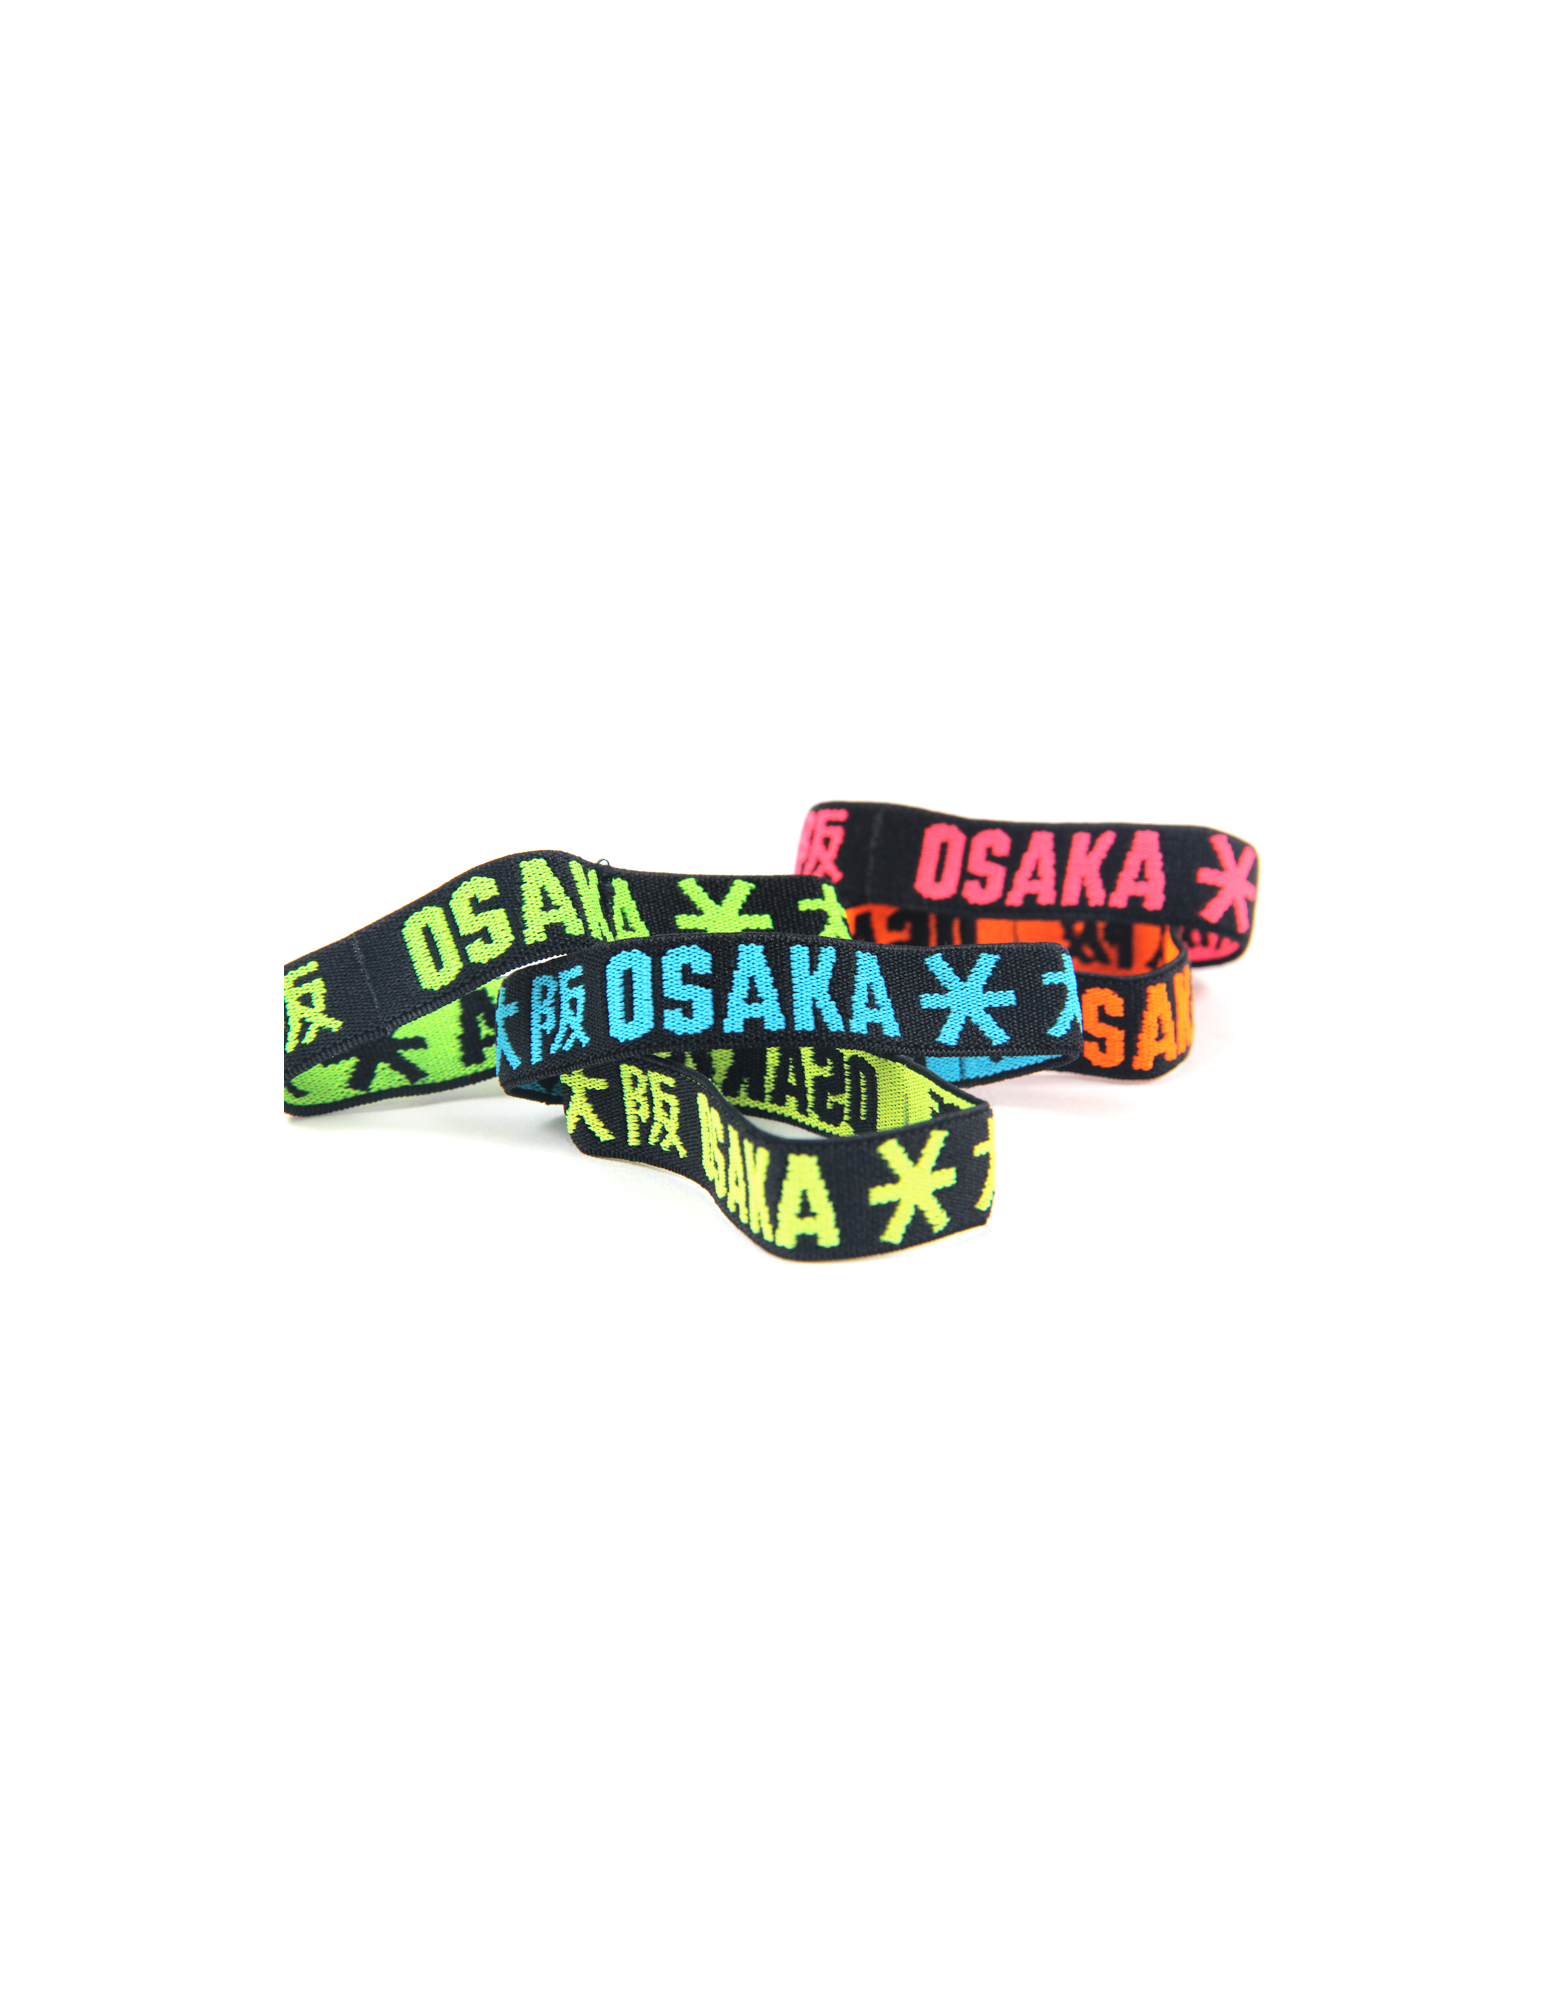 Osaka armbandjes elastic bracelets 4 = 5 De Hockeyzaak